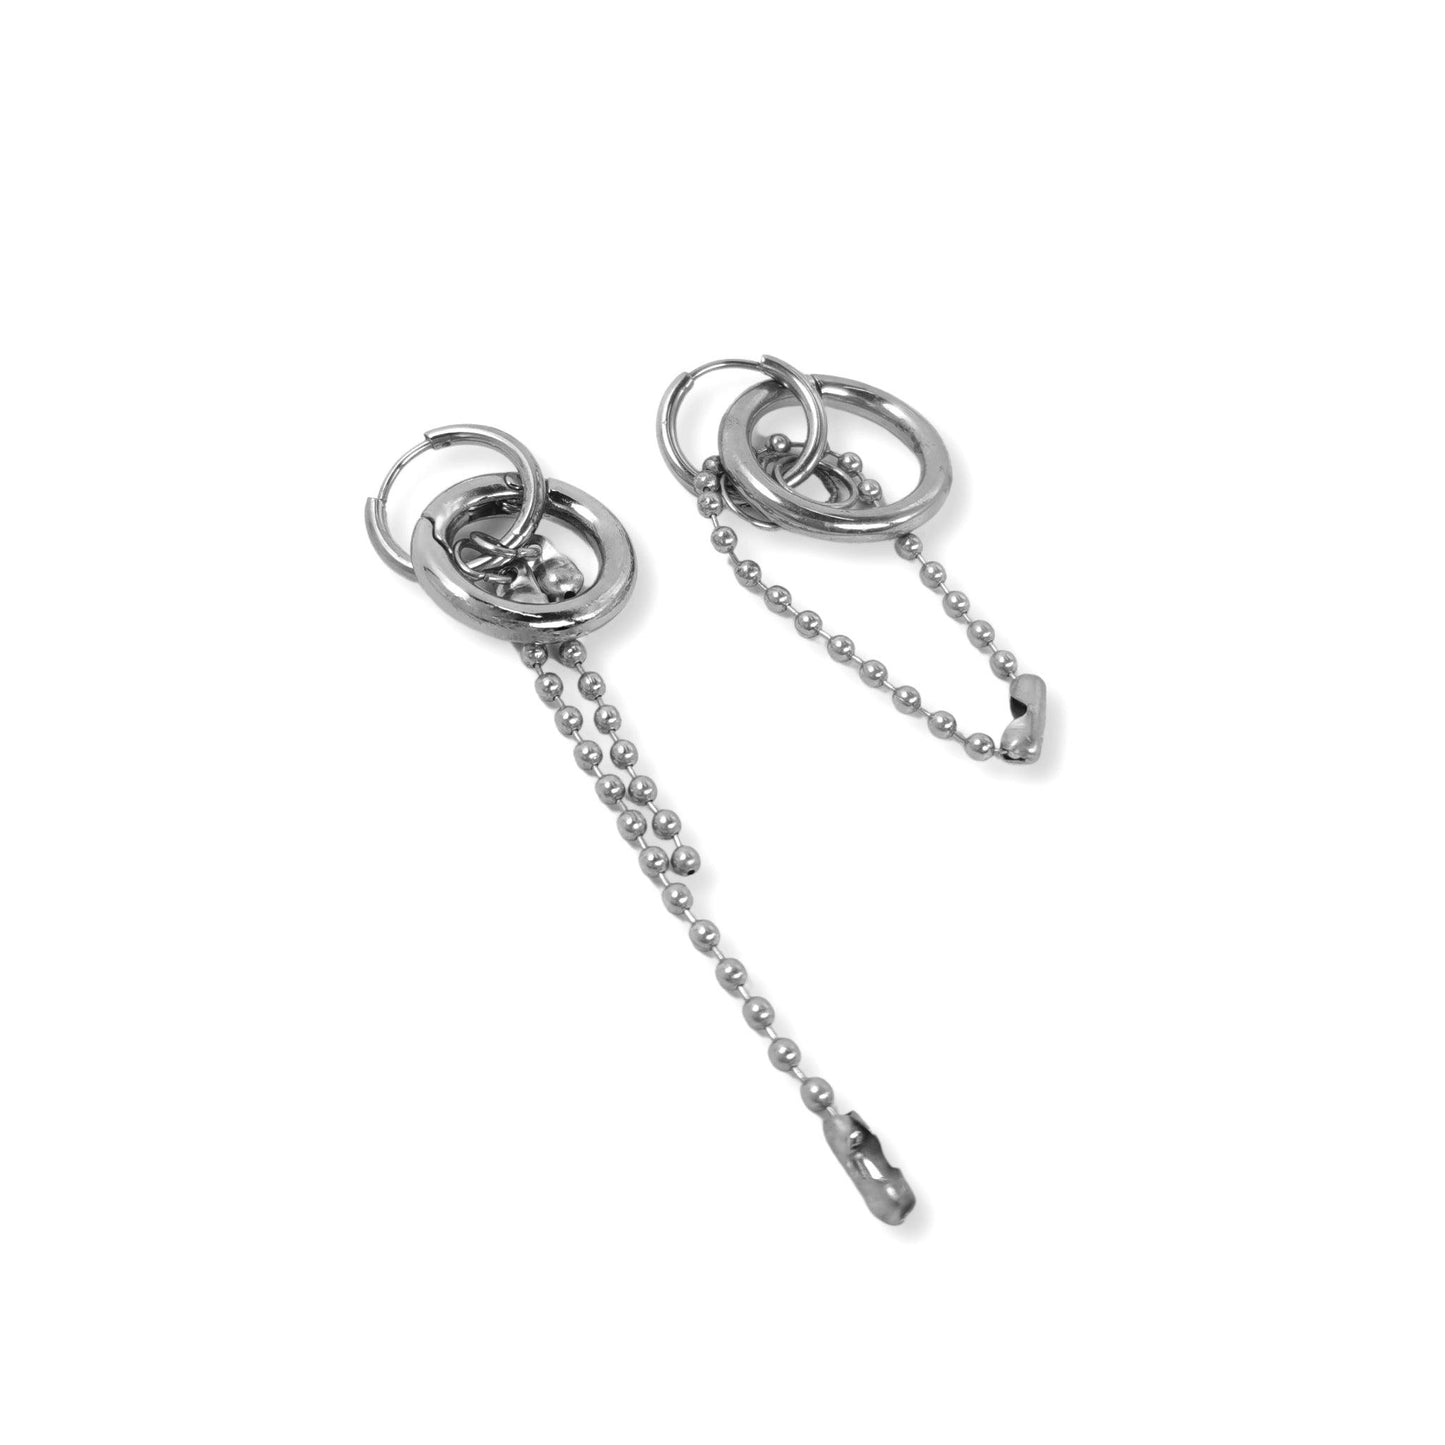 Fervooor Asymmetric waterproof oring and chains earrings - Fervooor